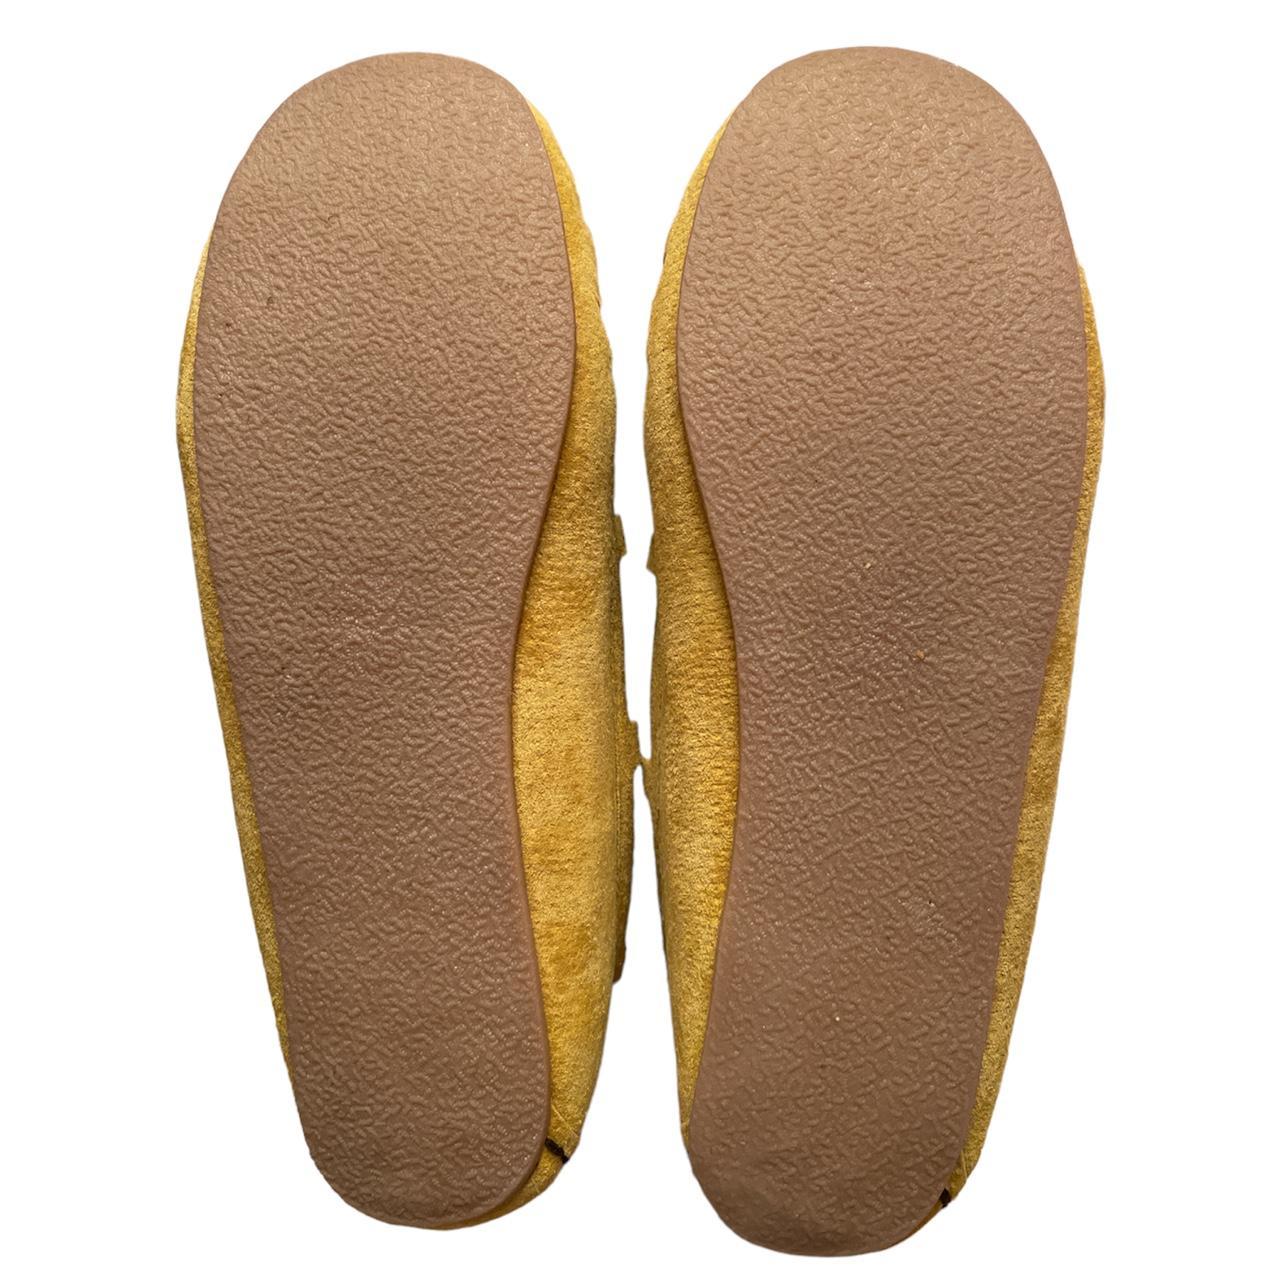 Lamo Women's Yellow and White Slippers (4)